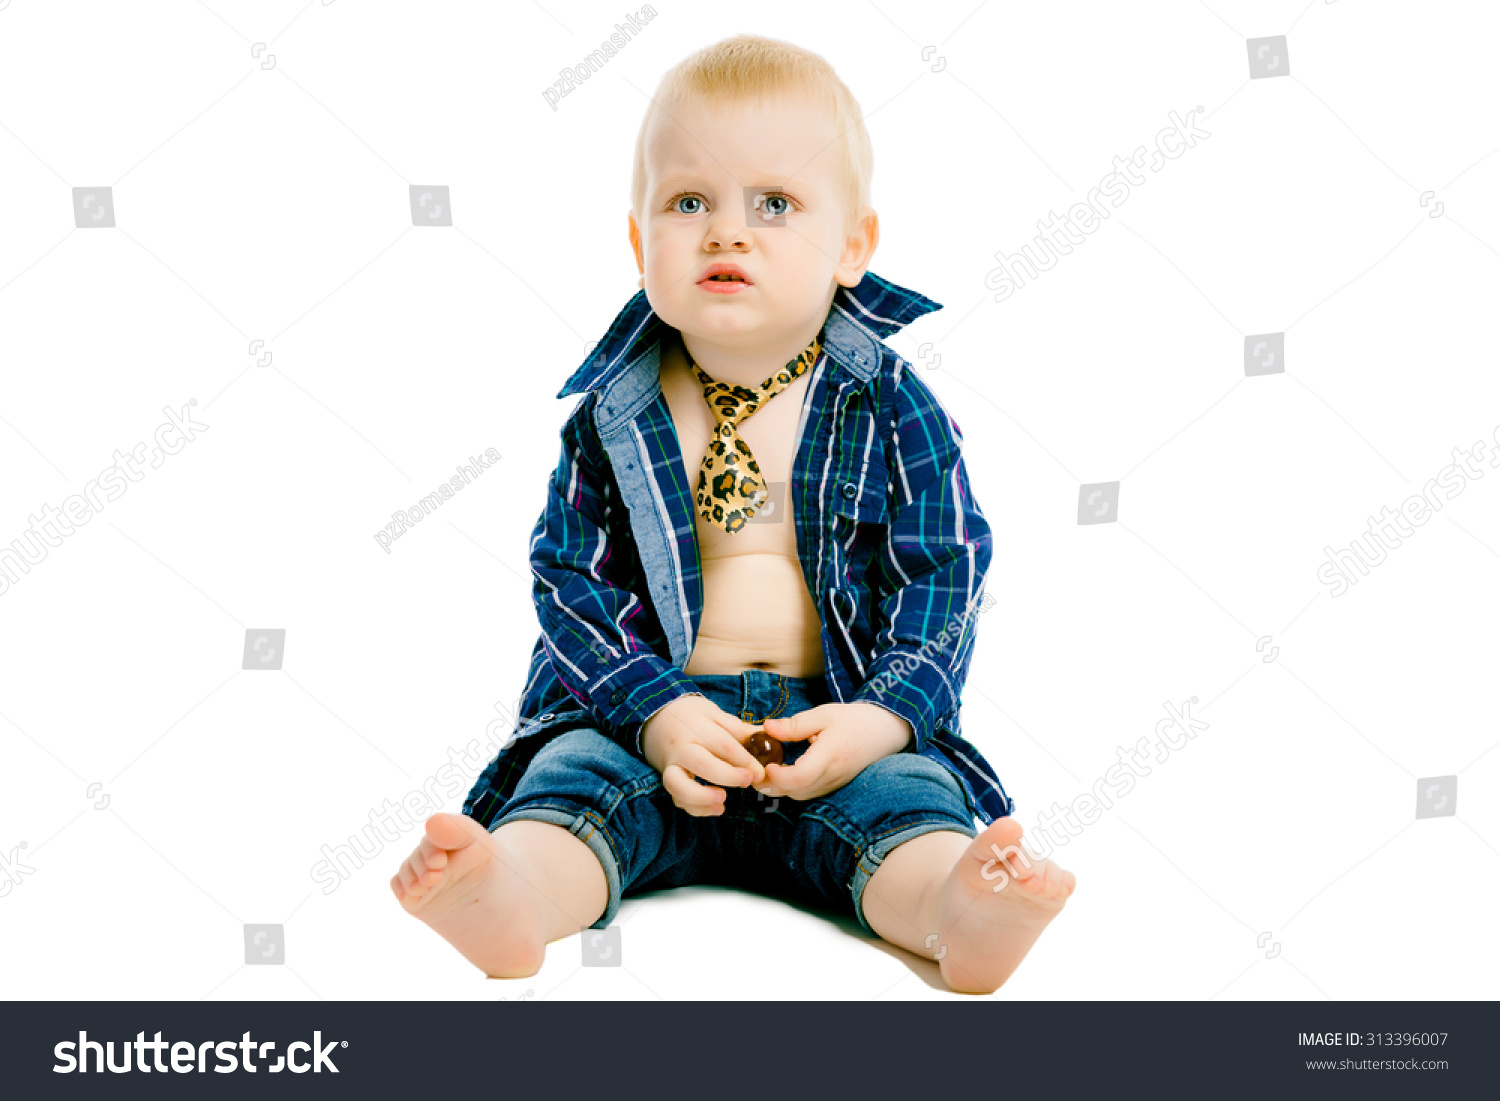 不满意的小男孩在一个格子衬衫,领带和牛仔裤